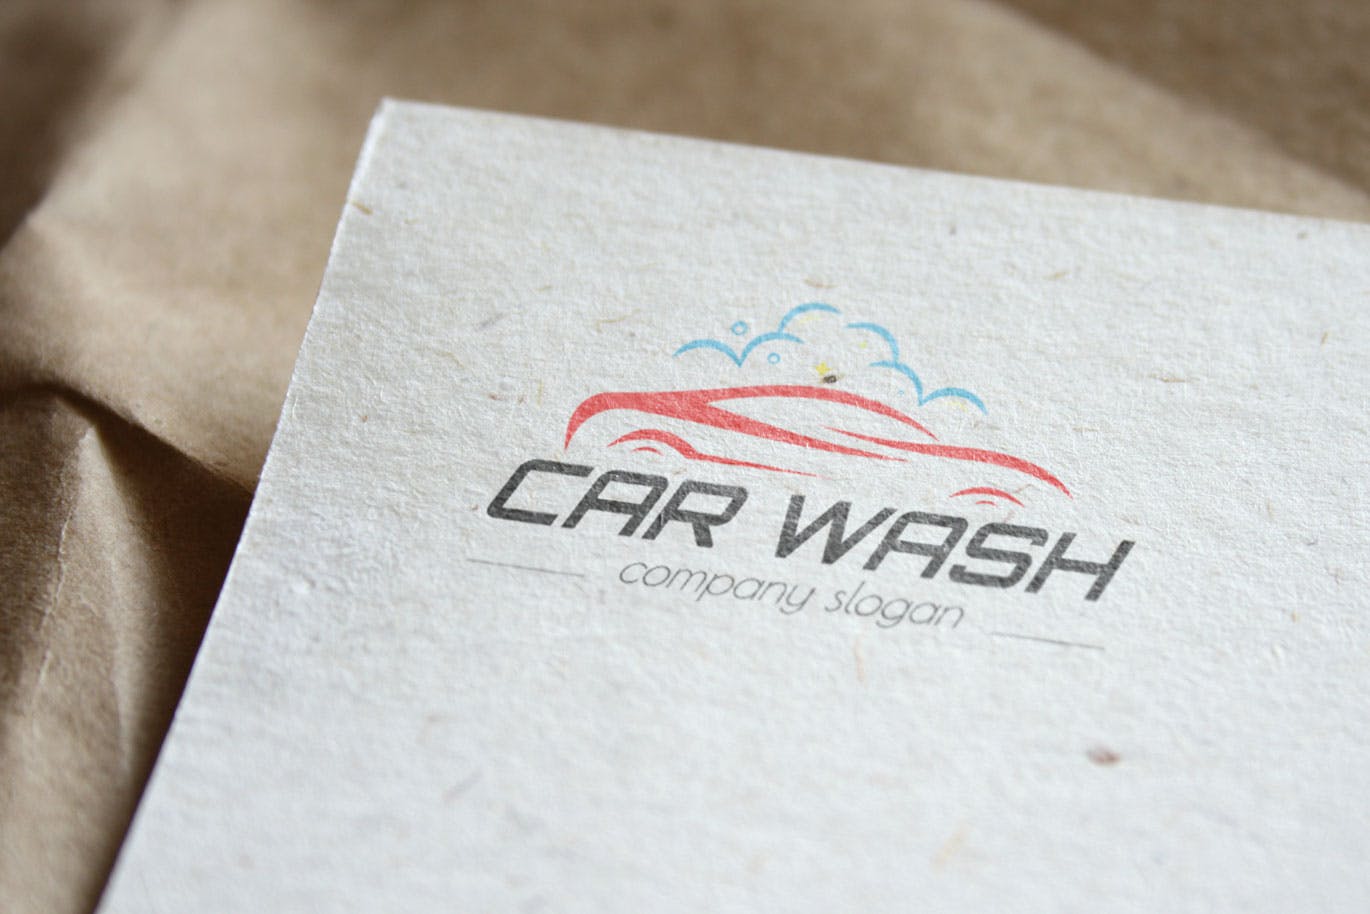 洗车店品牌Logo设计素材库精选模板 Car Wash Business Logo Template插图(3)